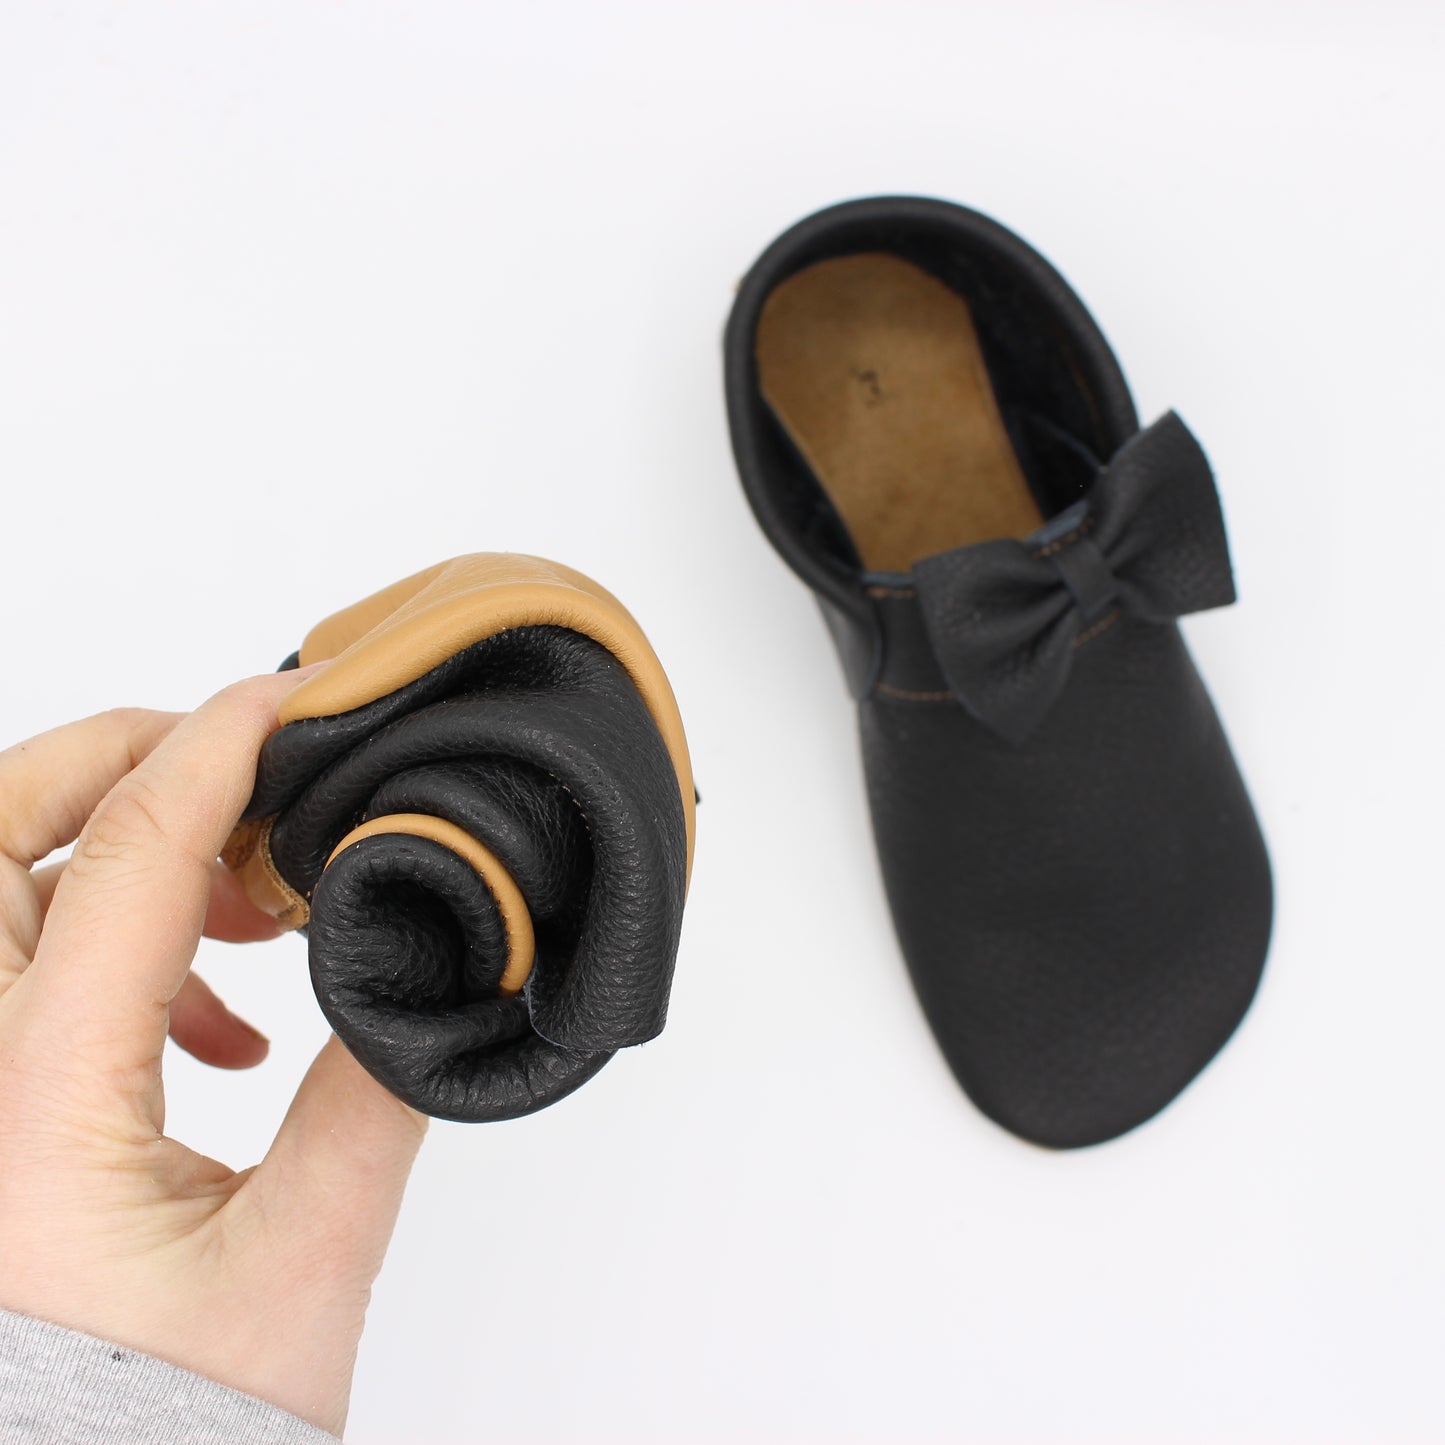 Ladies Custom Order Mocs - SOFT SOLES (NO RUBBER)